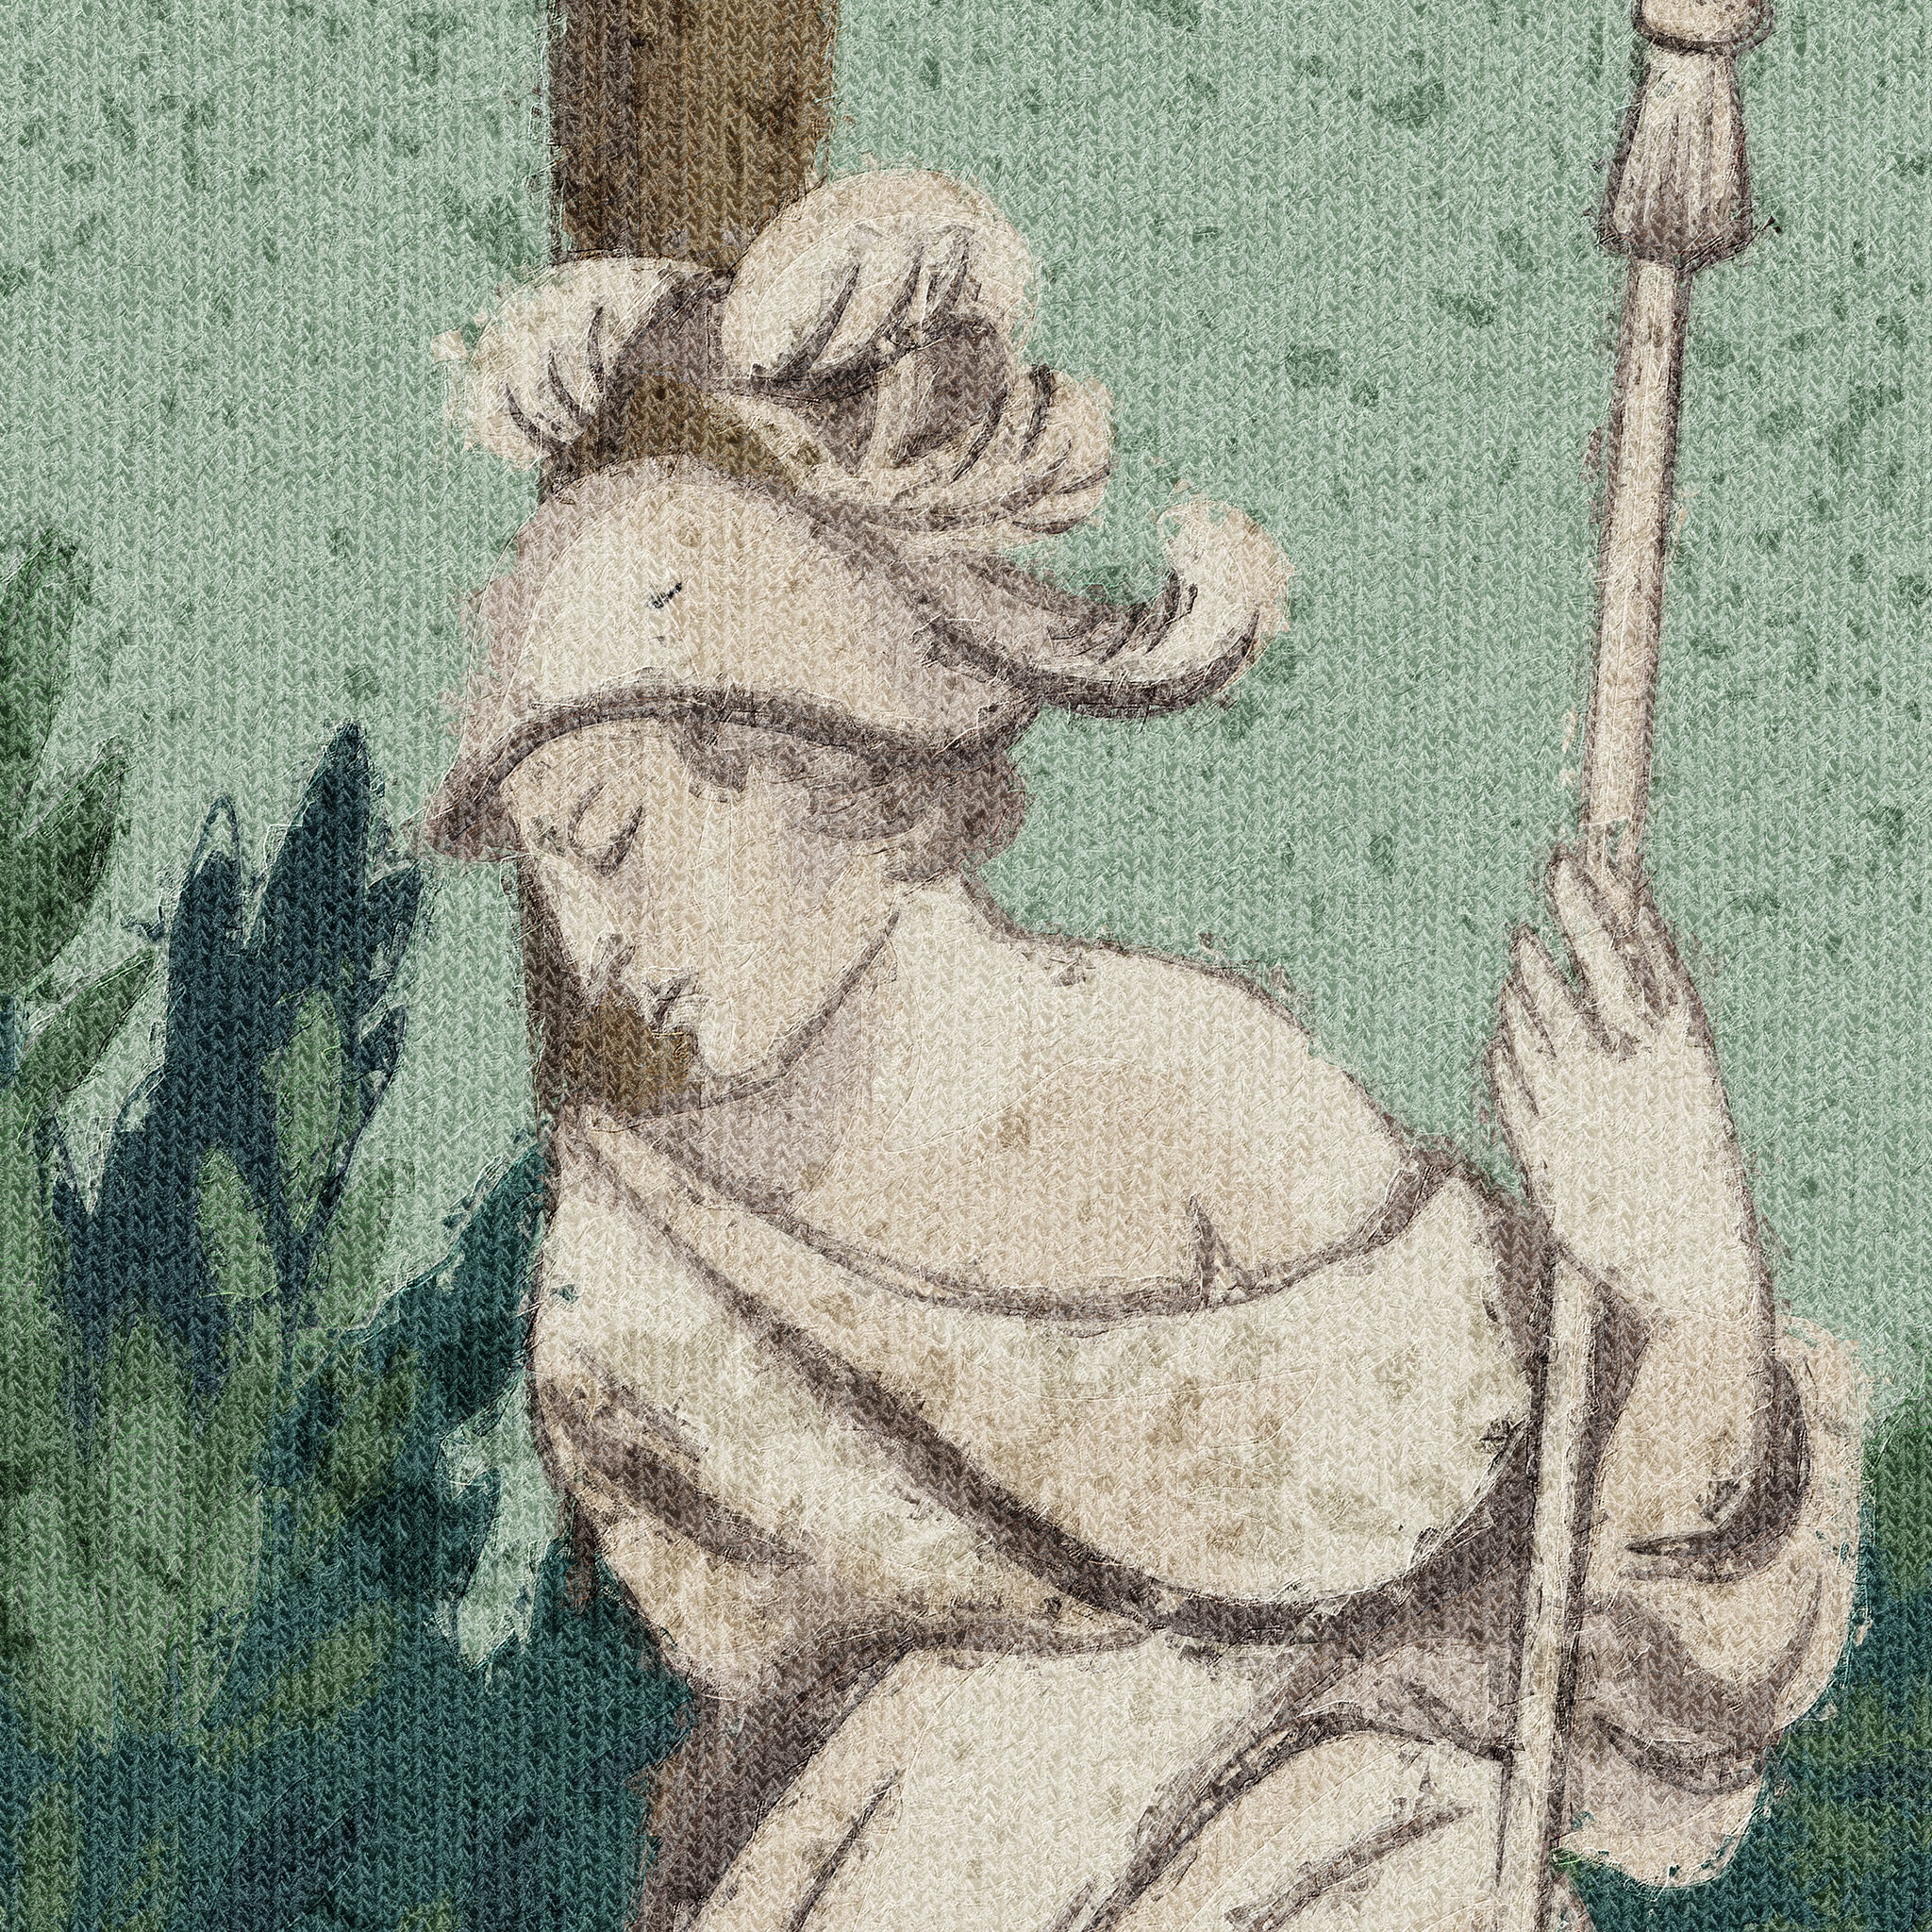 Athena Wallpaper Wallpaper - Wall Blush SG02 from WALL BLUSH